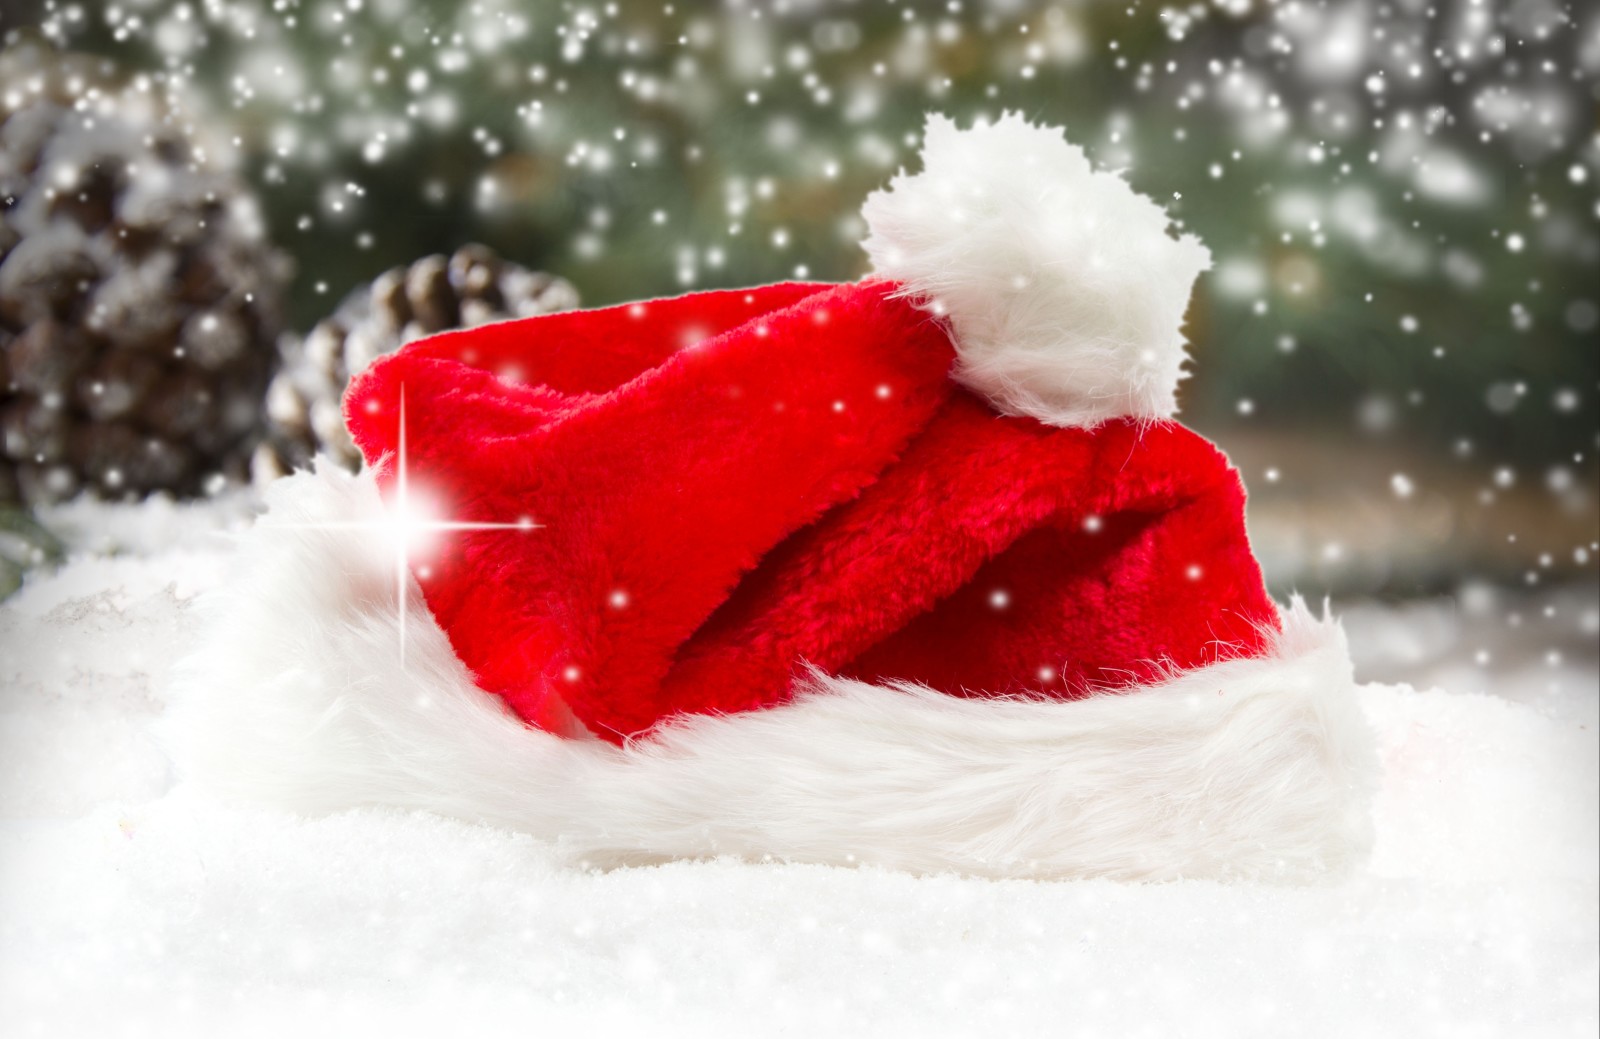 tuyết, Năm mới, Giáng sinh, Chúc mừng, mùa đông, mũ, Ông già Noel, trang trí